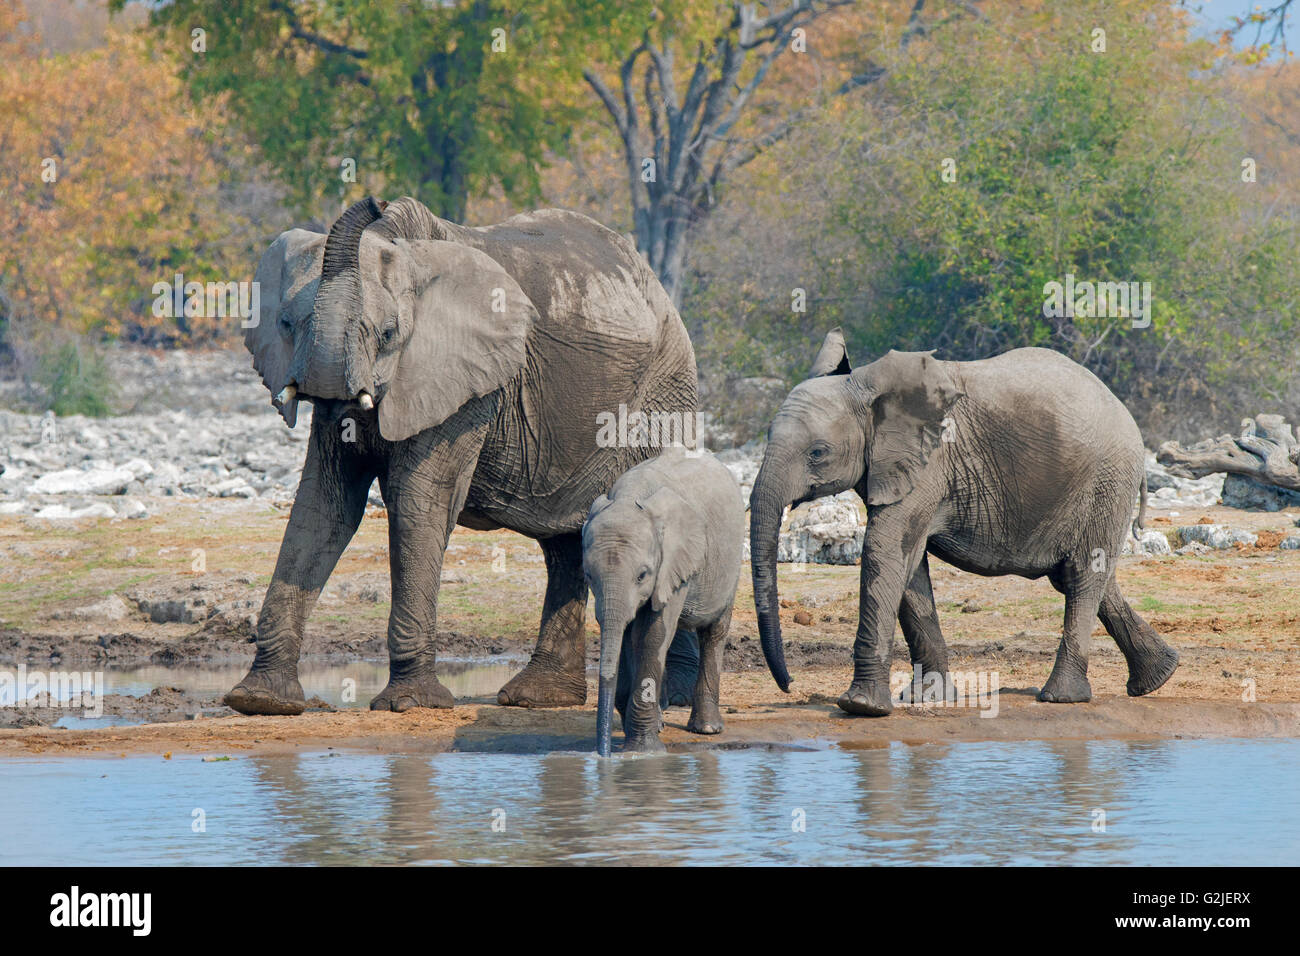 L'éléphant africain (Loxodonta africana) famille boire et jouer à un étang, Etosha National Park, Namibie, Afrique du Sud Banque D'Images